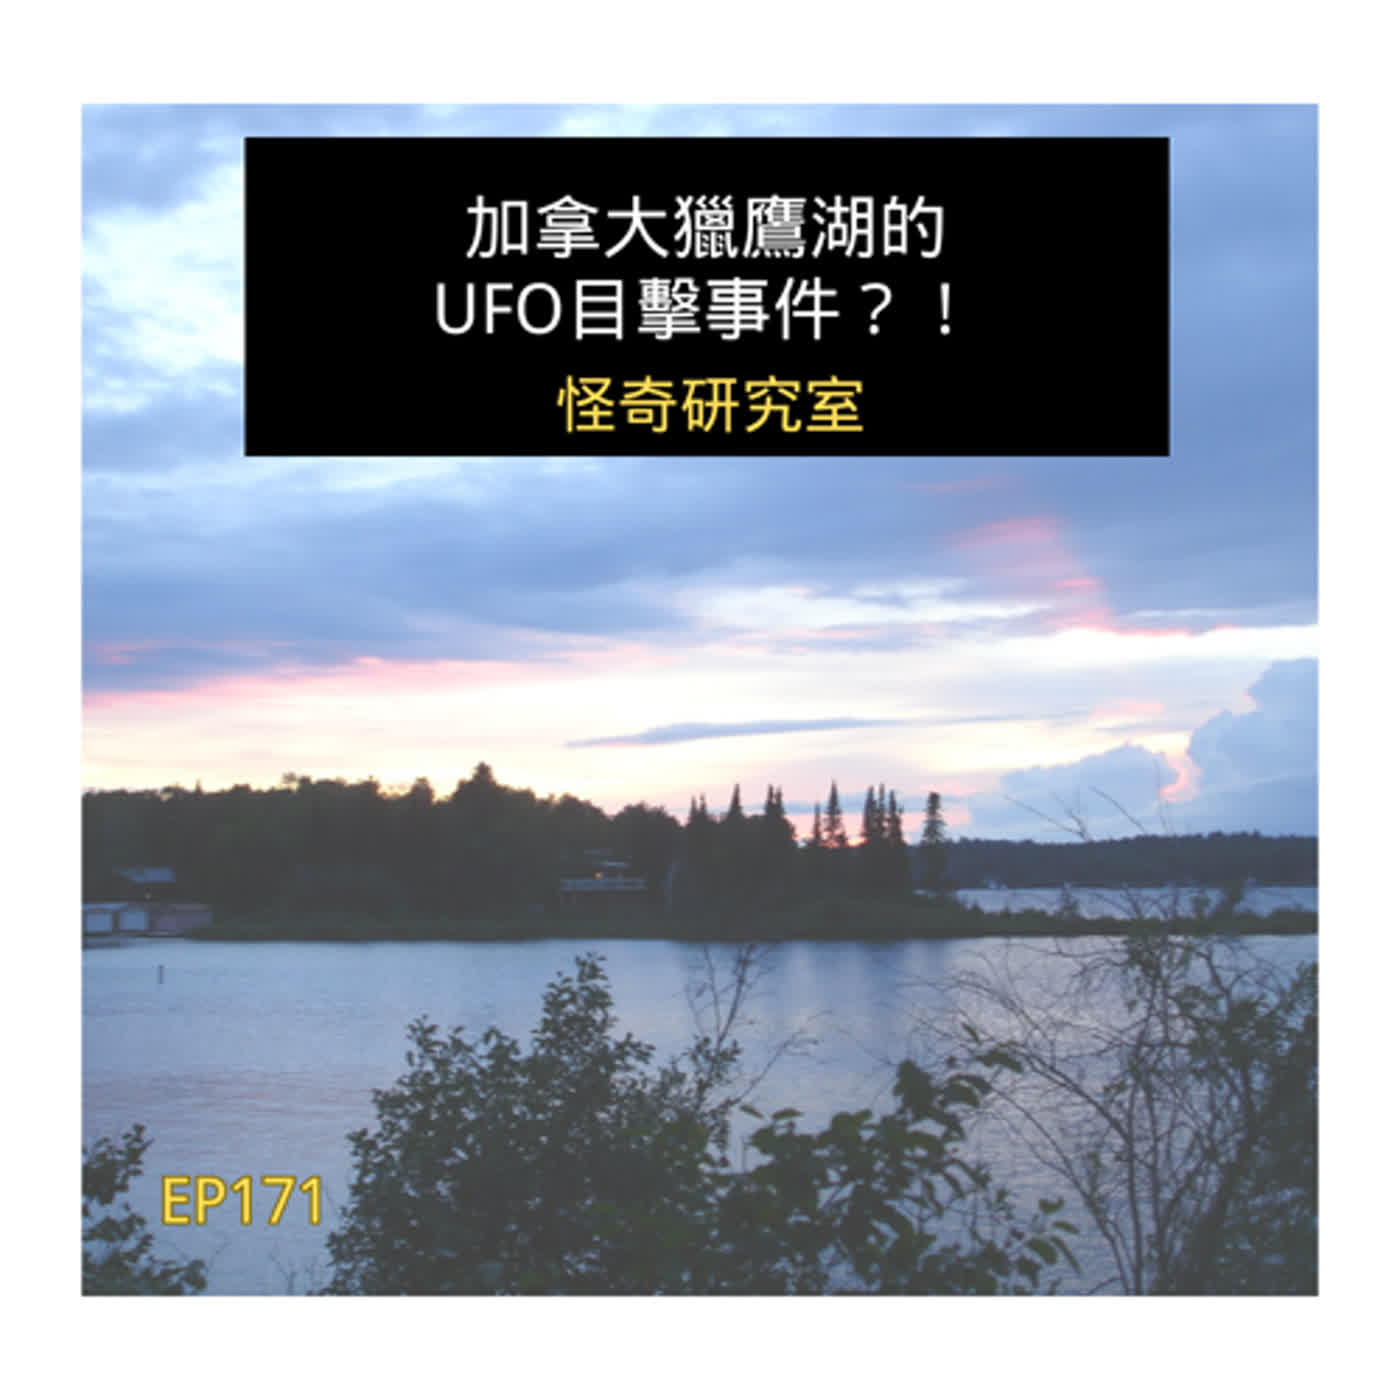 加拿大獵鷹湖的UFO目擊事件？！ - 這是「EP171」